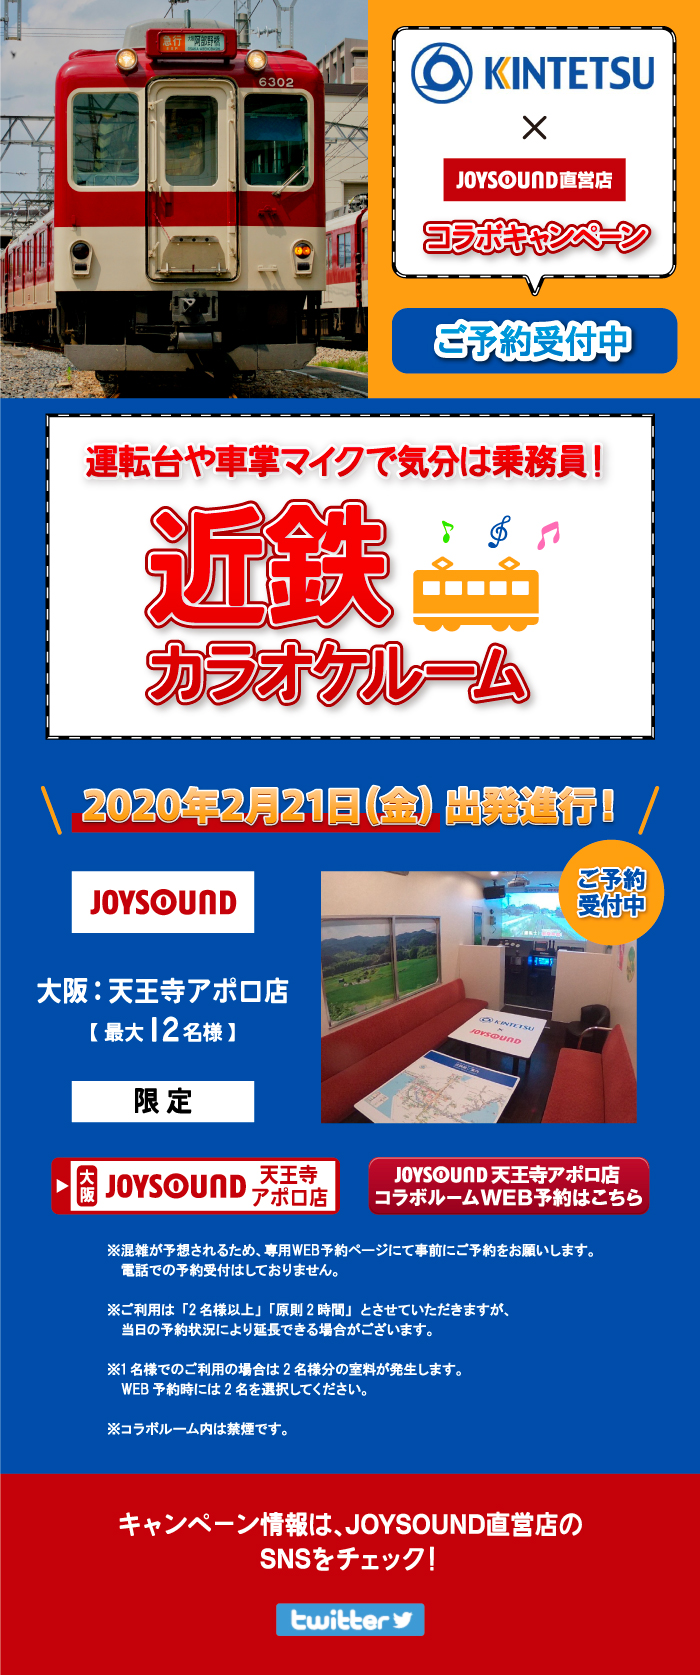 近畿日本鉄道×JOYSOUND直営店コラボキャンペーン